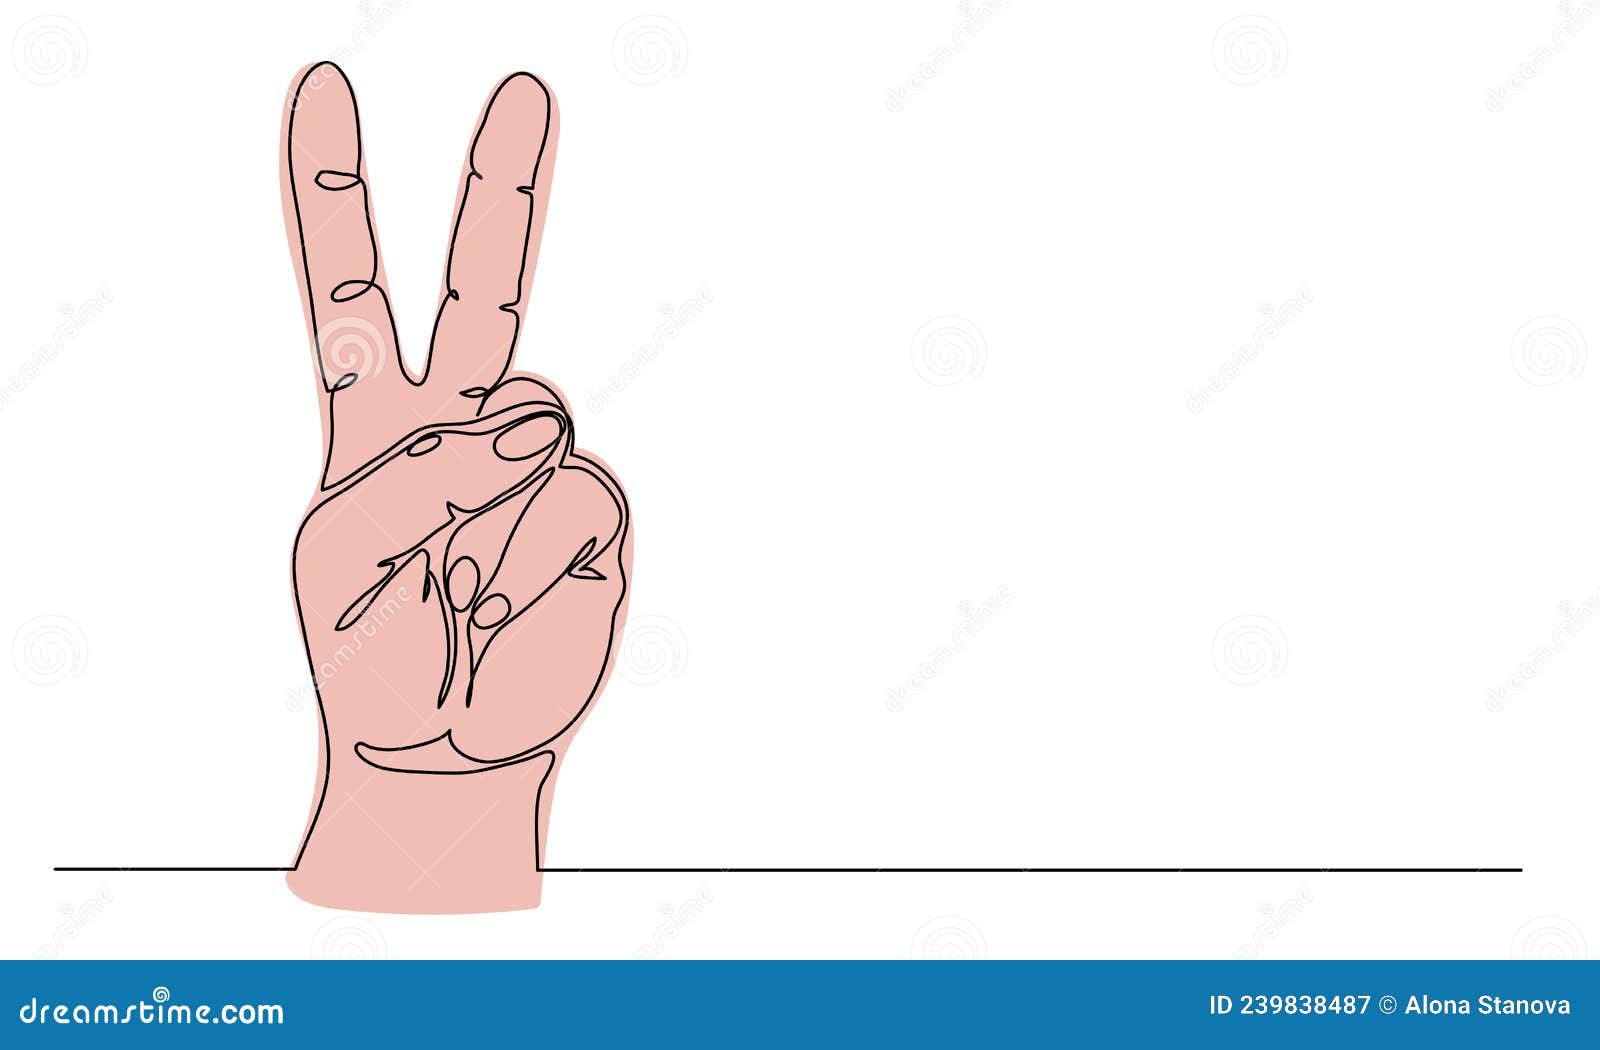 打手势和平的手 库存照片. 图片 包括有 皮肤, 人力, 手指, 犰狳, 姿态, 符号, 妇女, 和平, 人员 - 31735172